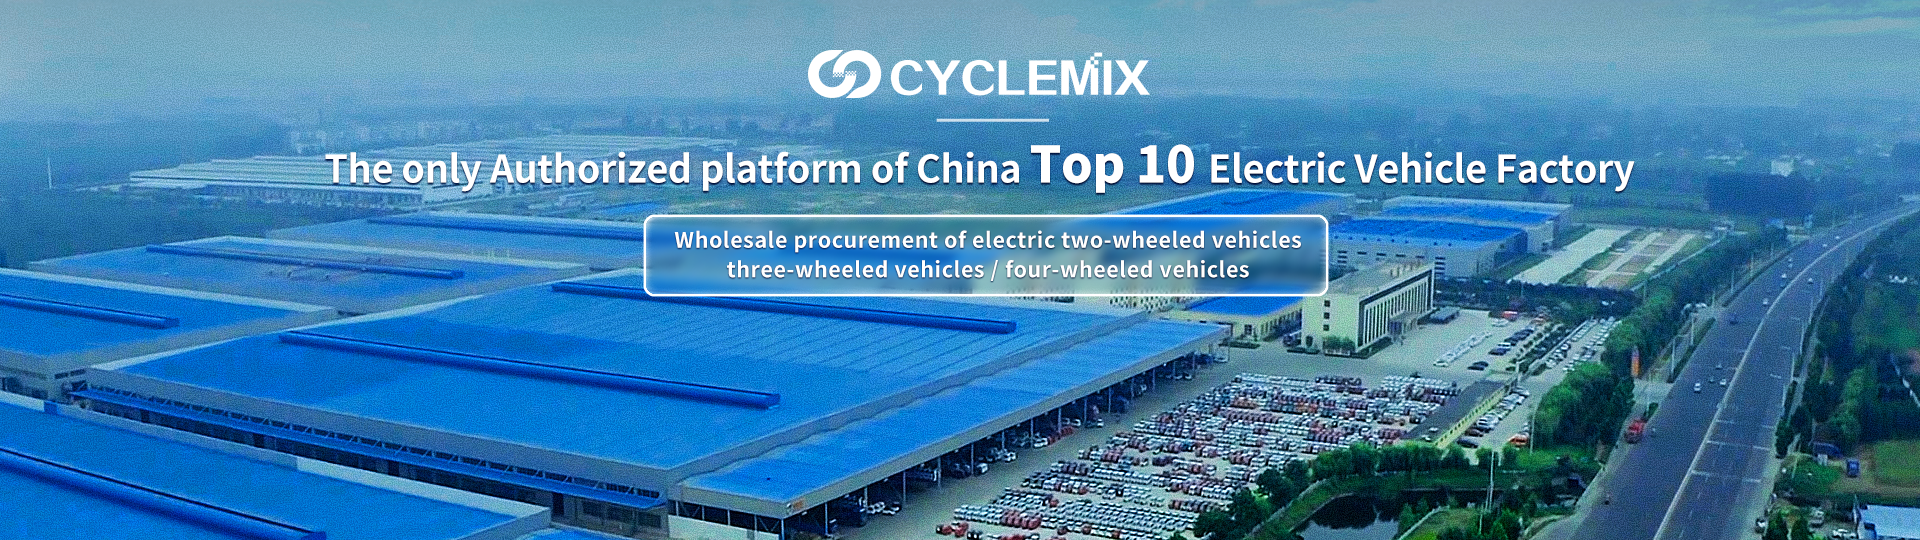 CYCLEMIX Çin'in En İyi 10 Elektrikli Araç Fabrikasının tek yetkili tarafı/platformu